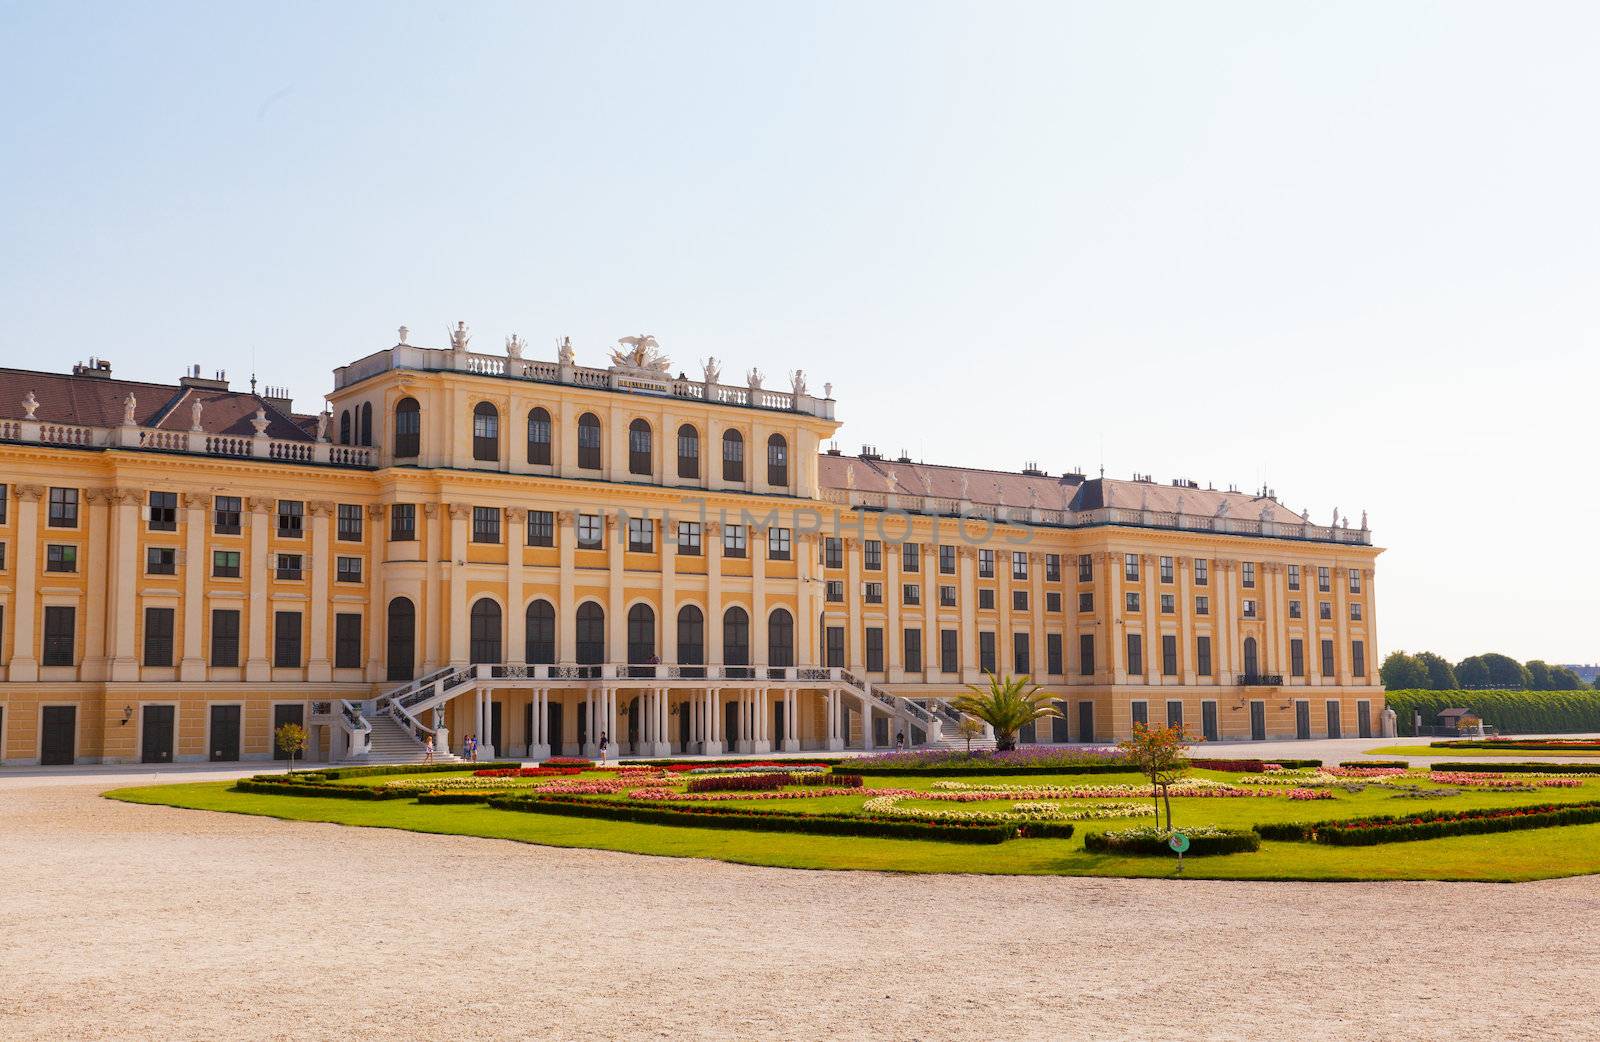 Schonbrunn palace in Vienna Austria